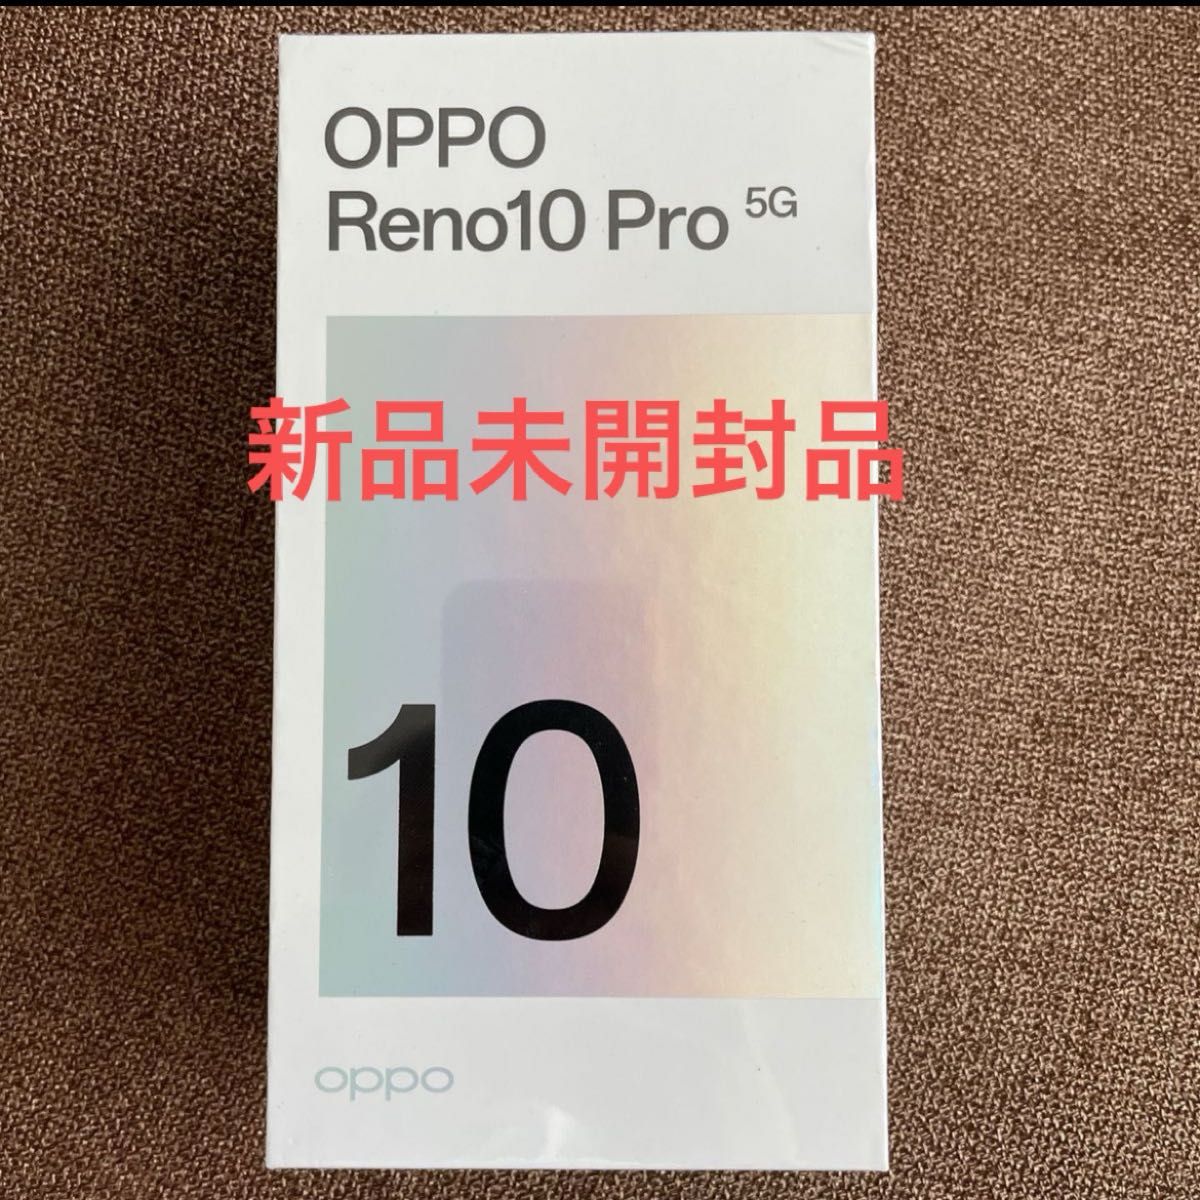 新品未開封品】OPPO Reno10 Pro 5G [グロッシーパープル] 8GB/256GB